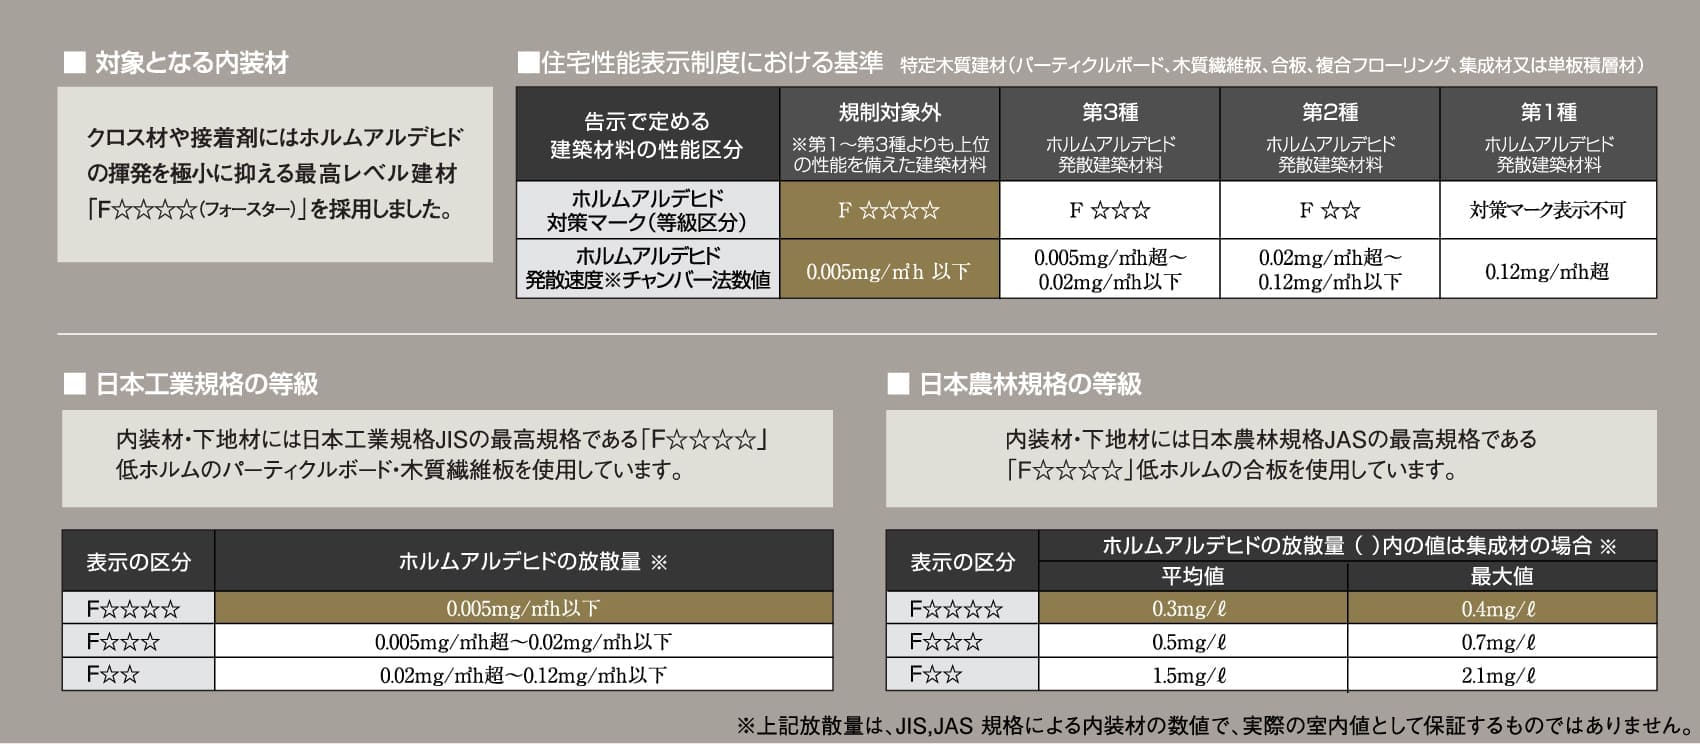 対象となる内素材　住宅性能表示制度における基準　日本工業企画の等級　日本農林規格の等級